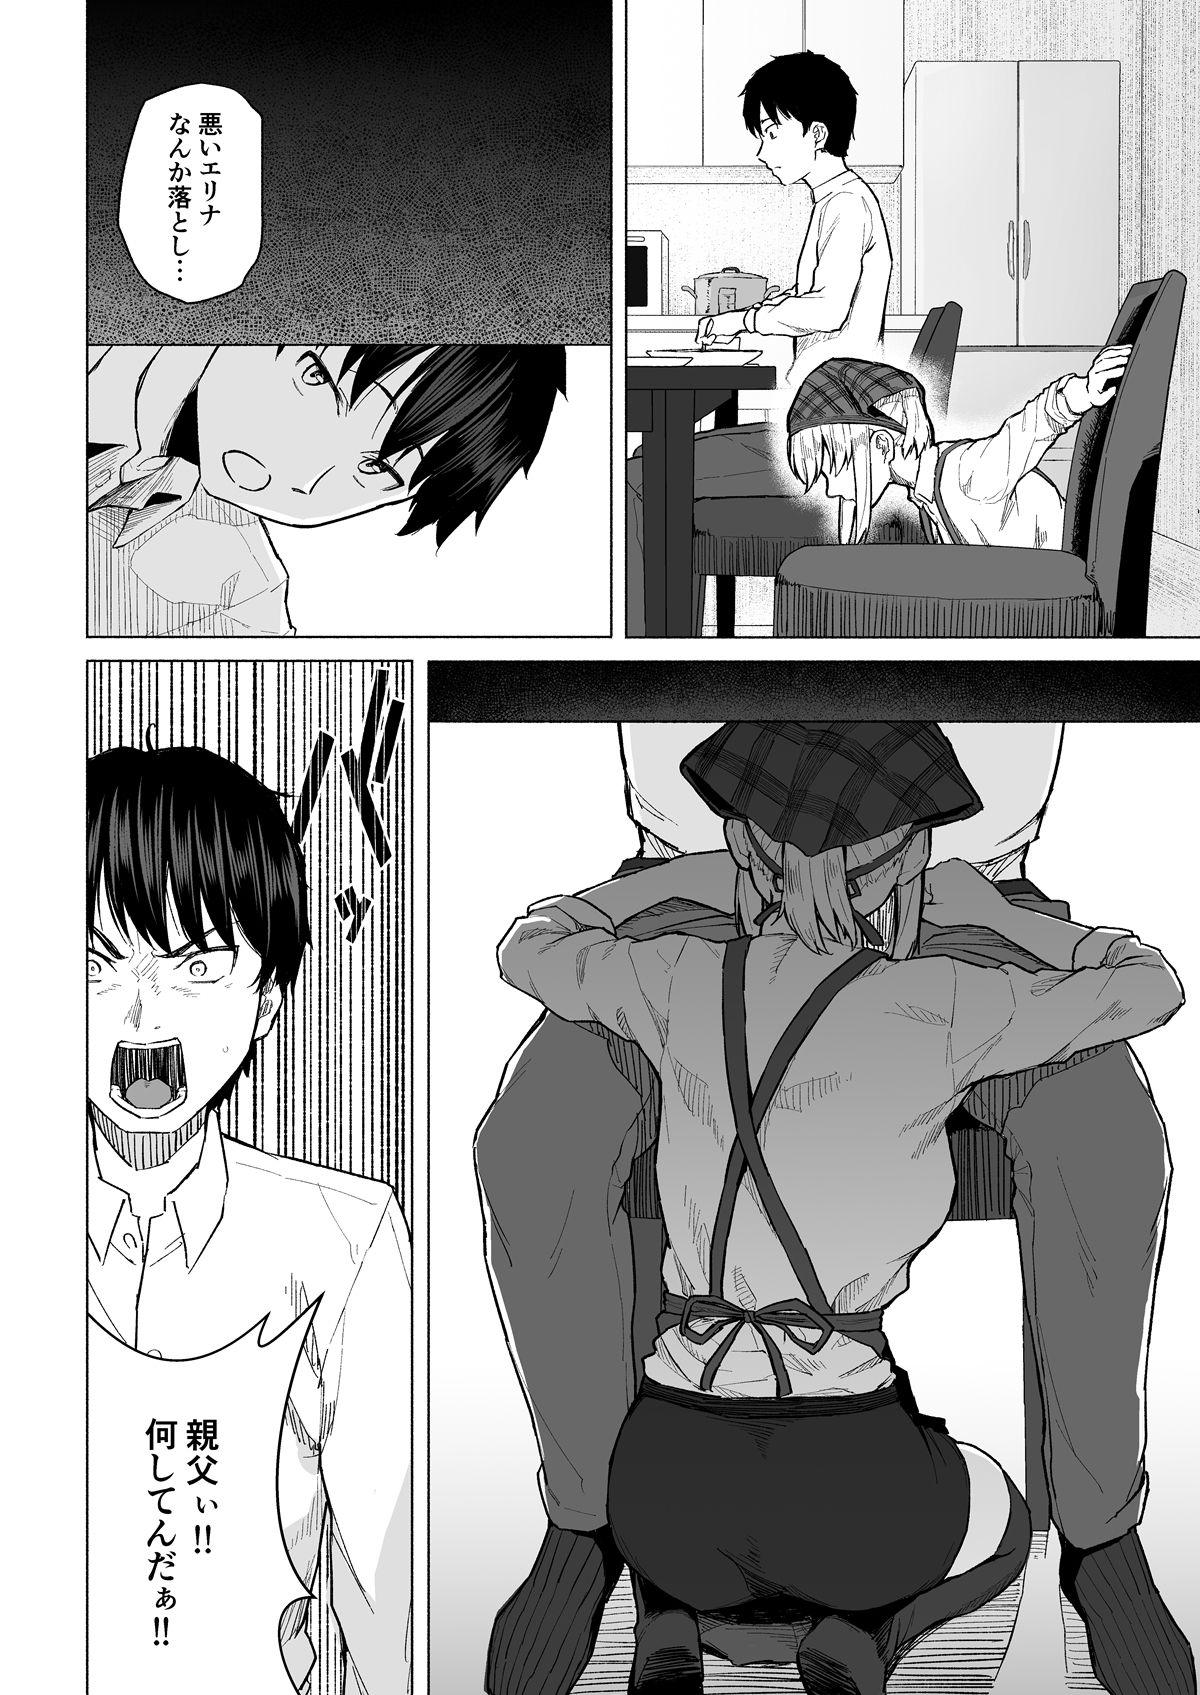 Cum On Ass Botsu ni Shita Ero Manga 2 Project aborted Negra - Page 5